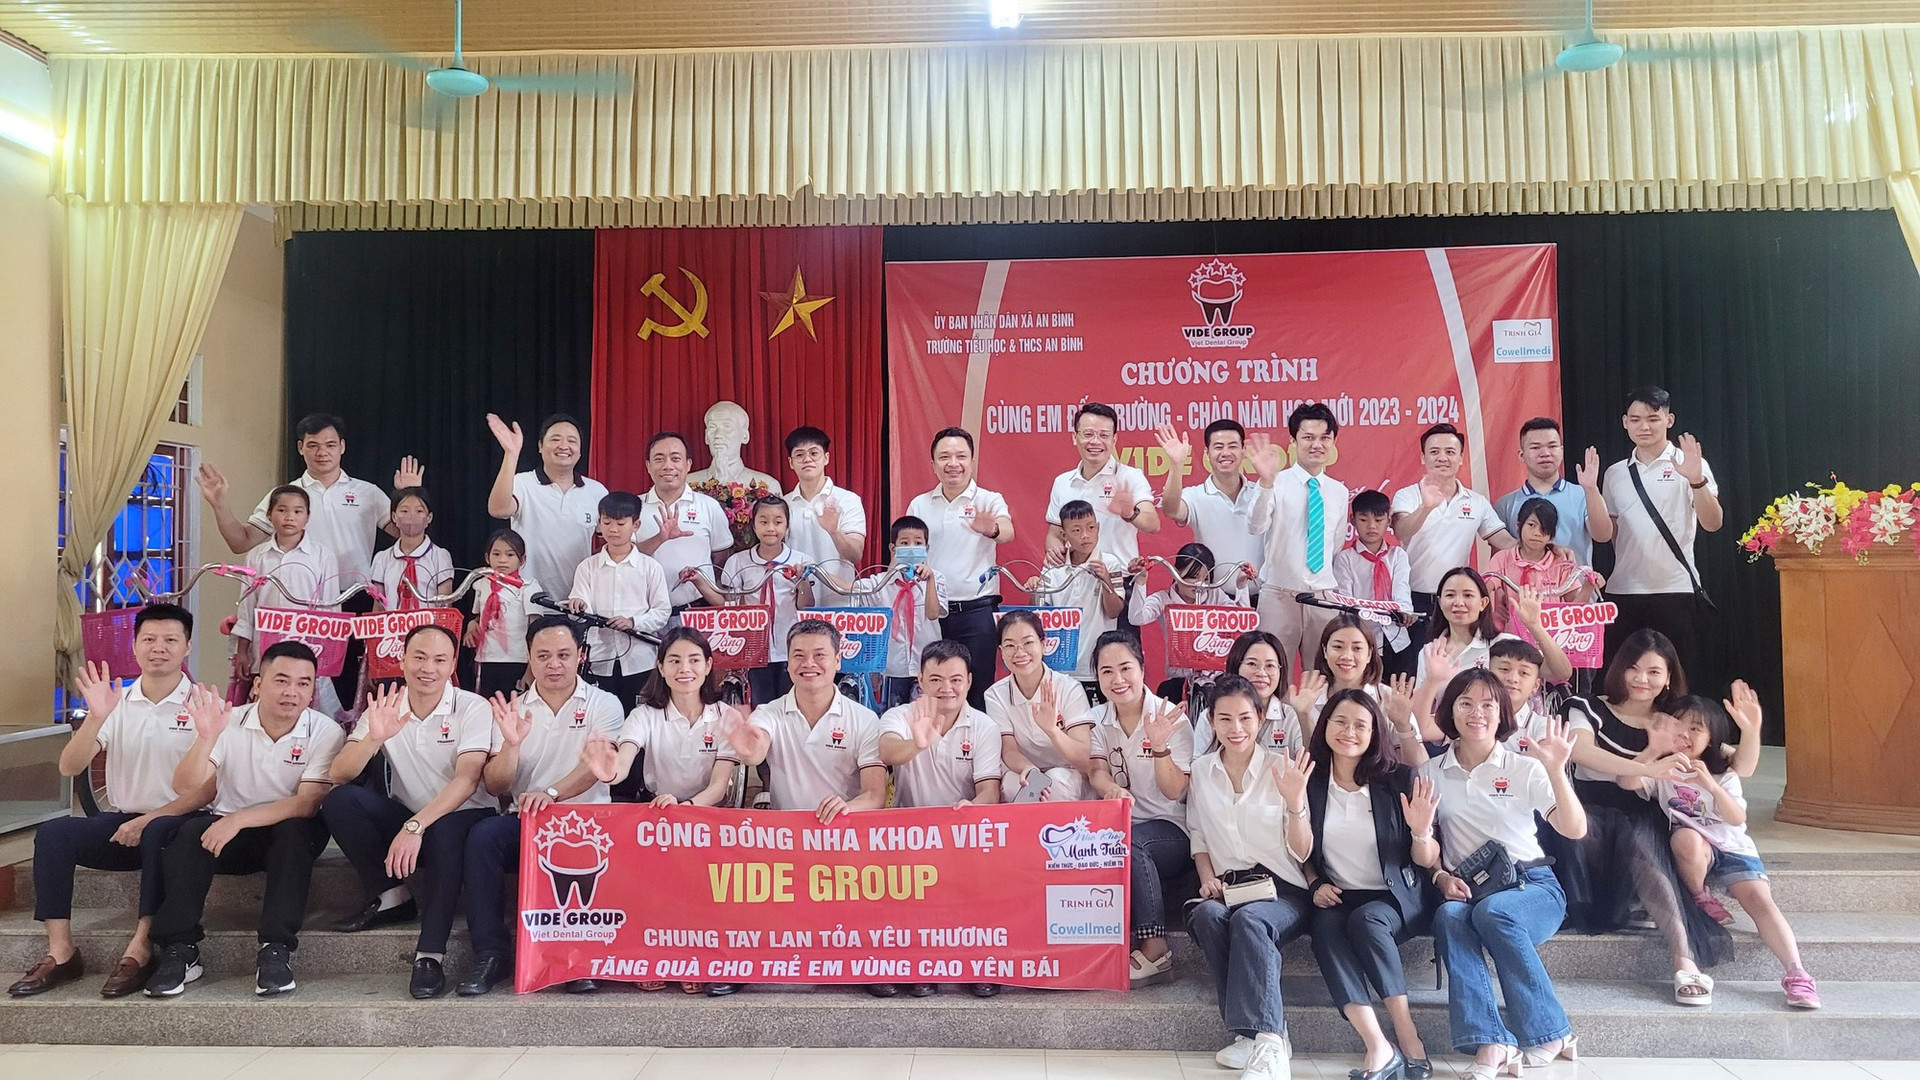 Cộng đồng Nha khoa Việt trao tặng nhiều phần quà ý nghĩa “Cùng em đến trường” - Ảnh 2.